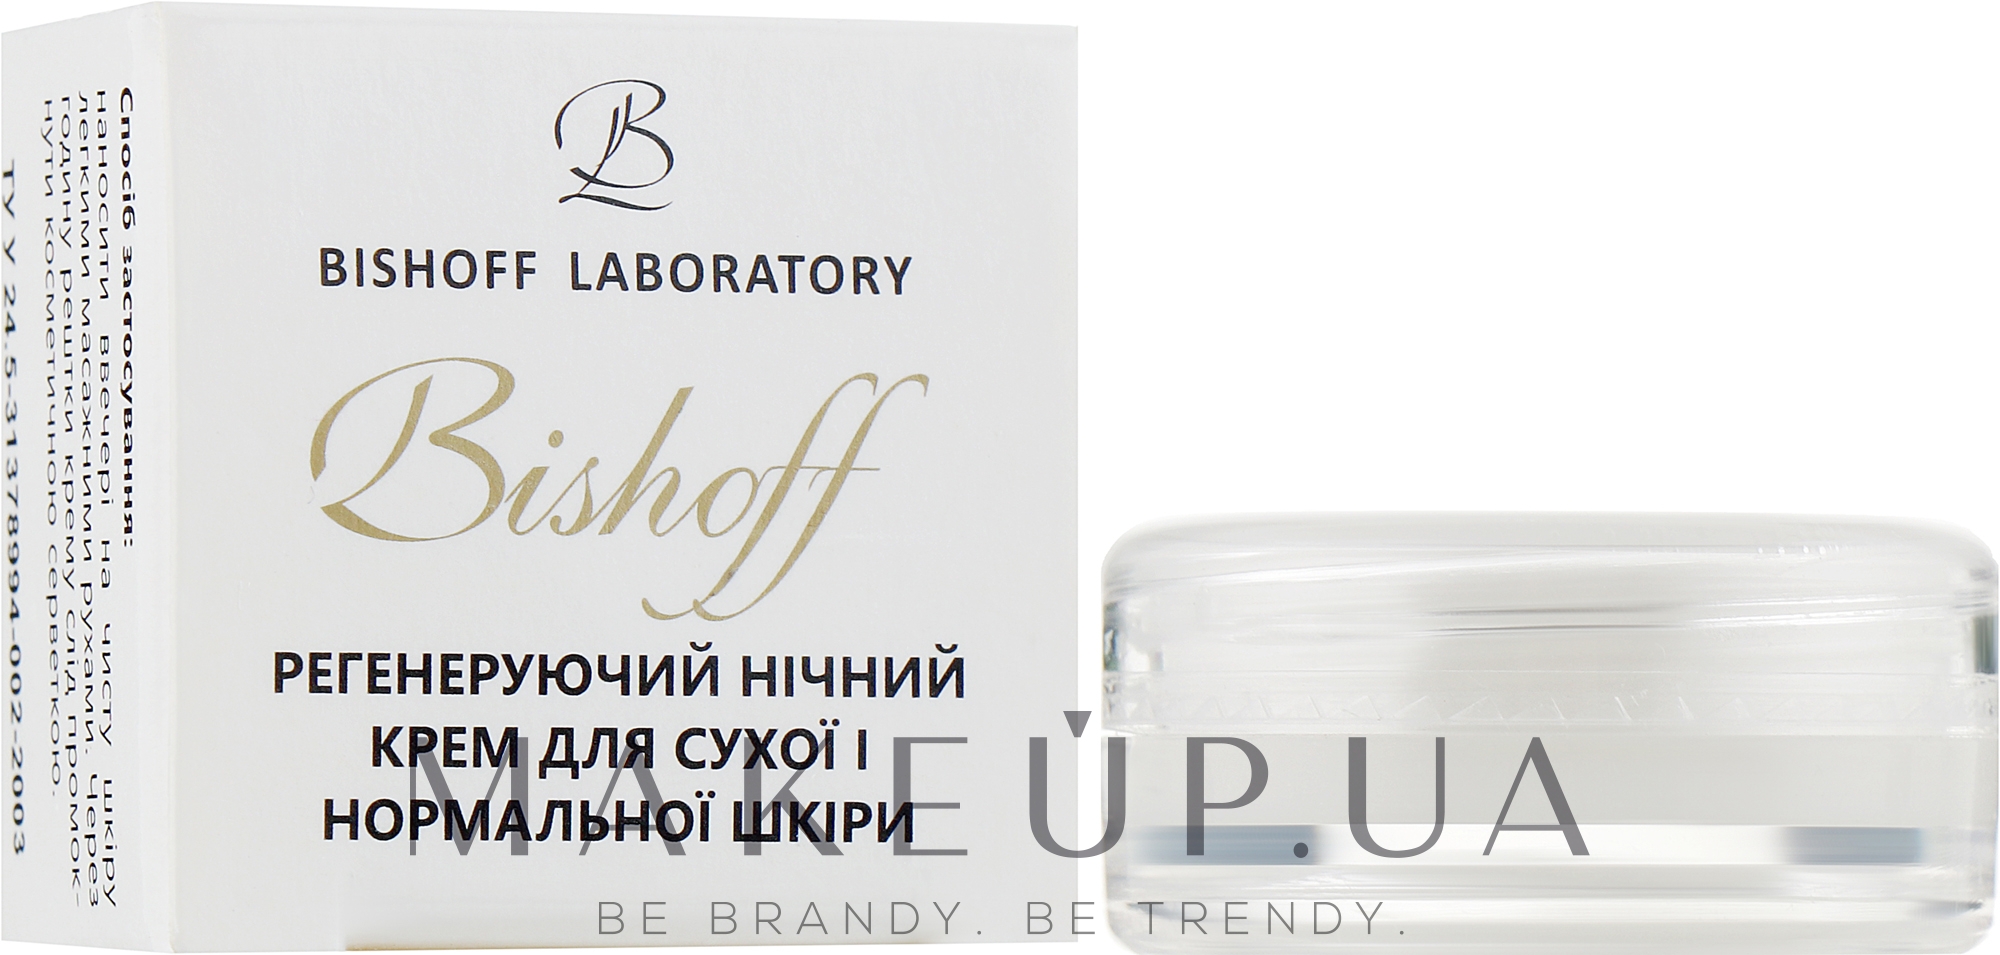 Регенерирующий ночной крем для сухой и нормальной кожи - Bishoff (пробник) — фото 2.5ml